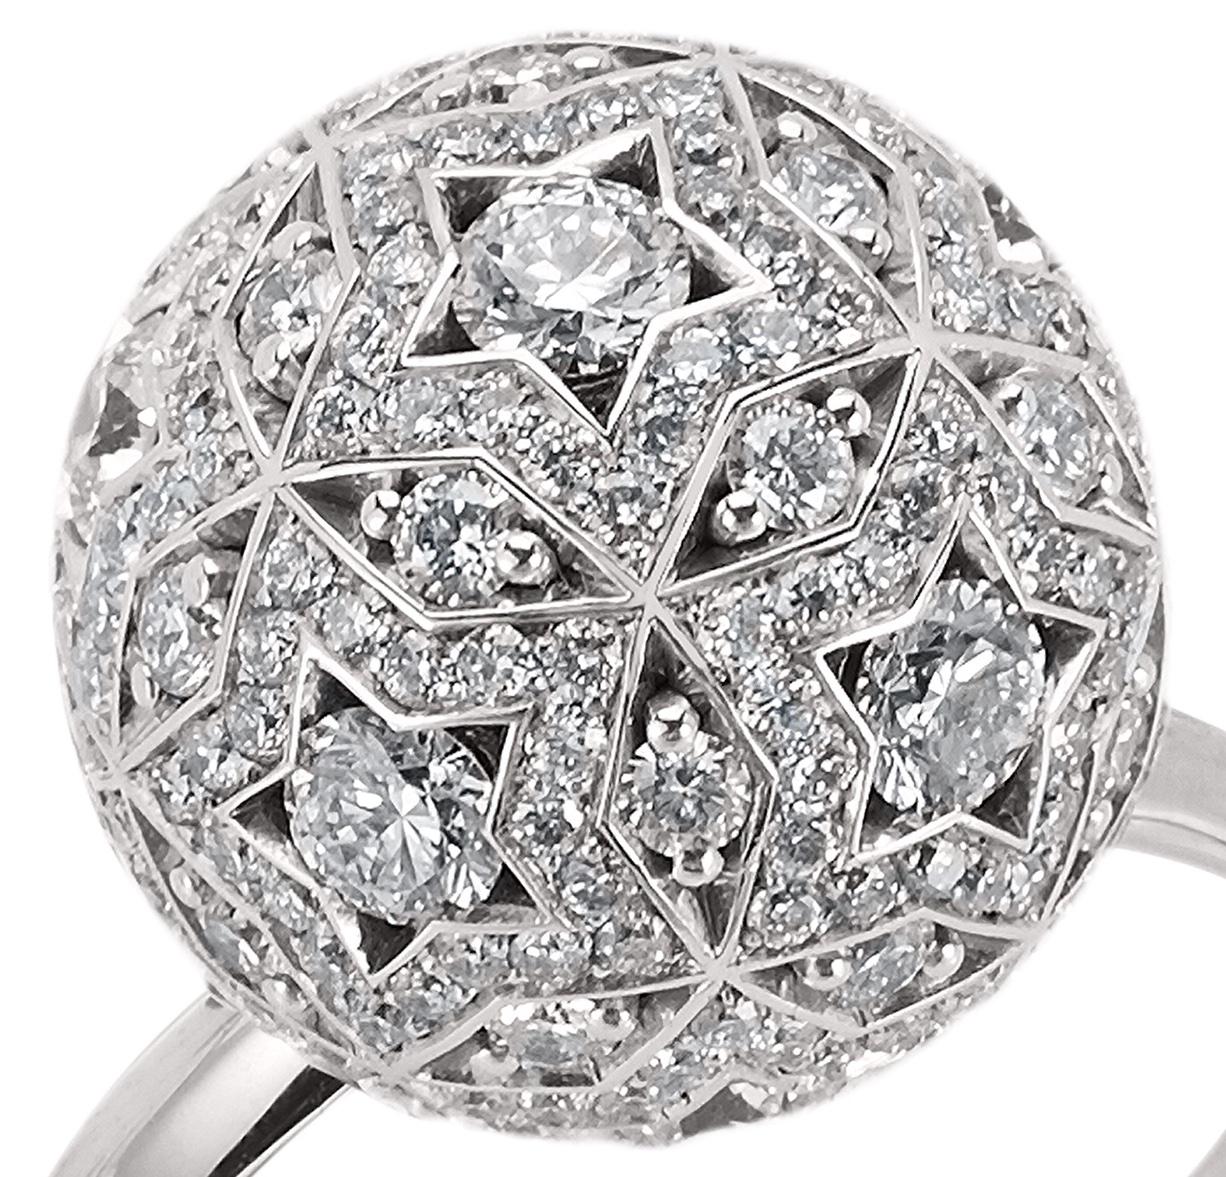 Ein einzigartiges Ringdesign, das von den Konstellationen des Nachthimmels inspiriert ist und mit Hirsh Celestial Movement geschaffen wurde.

- 256 Diamanten im Rundschliff mit einem Gesamtgewicht von ca. 2,15 Karat
- Gefertigt aus 18 Karat Weißgold